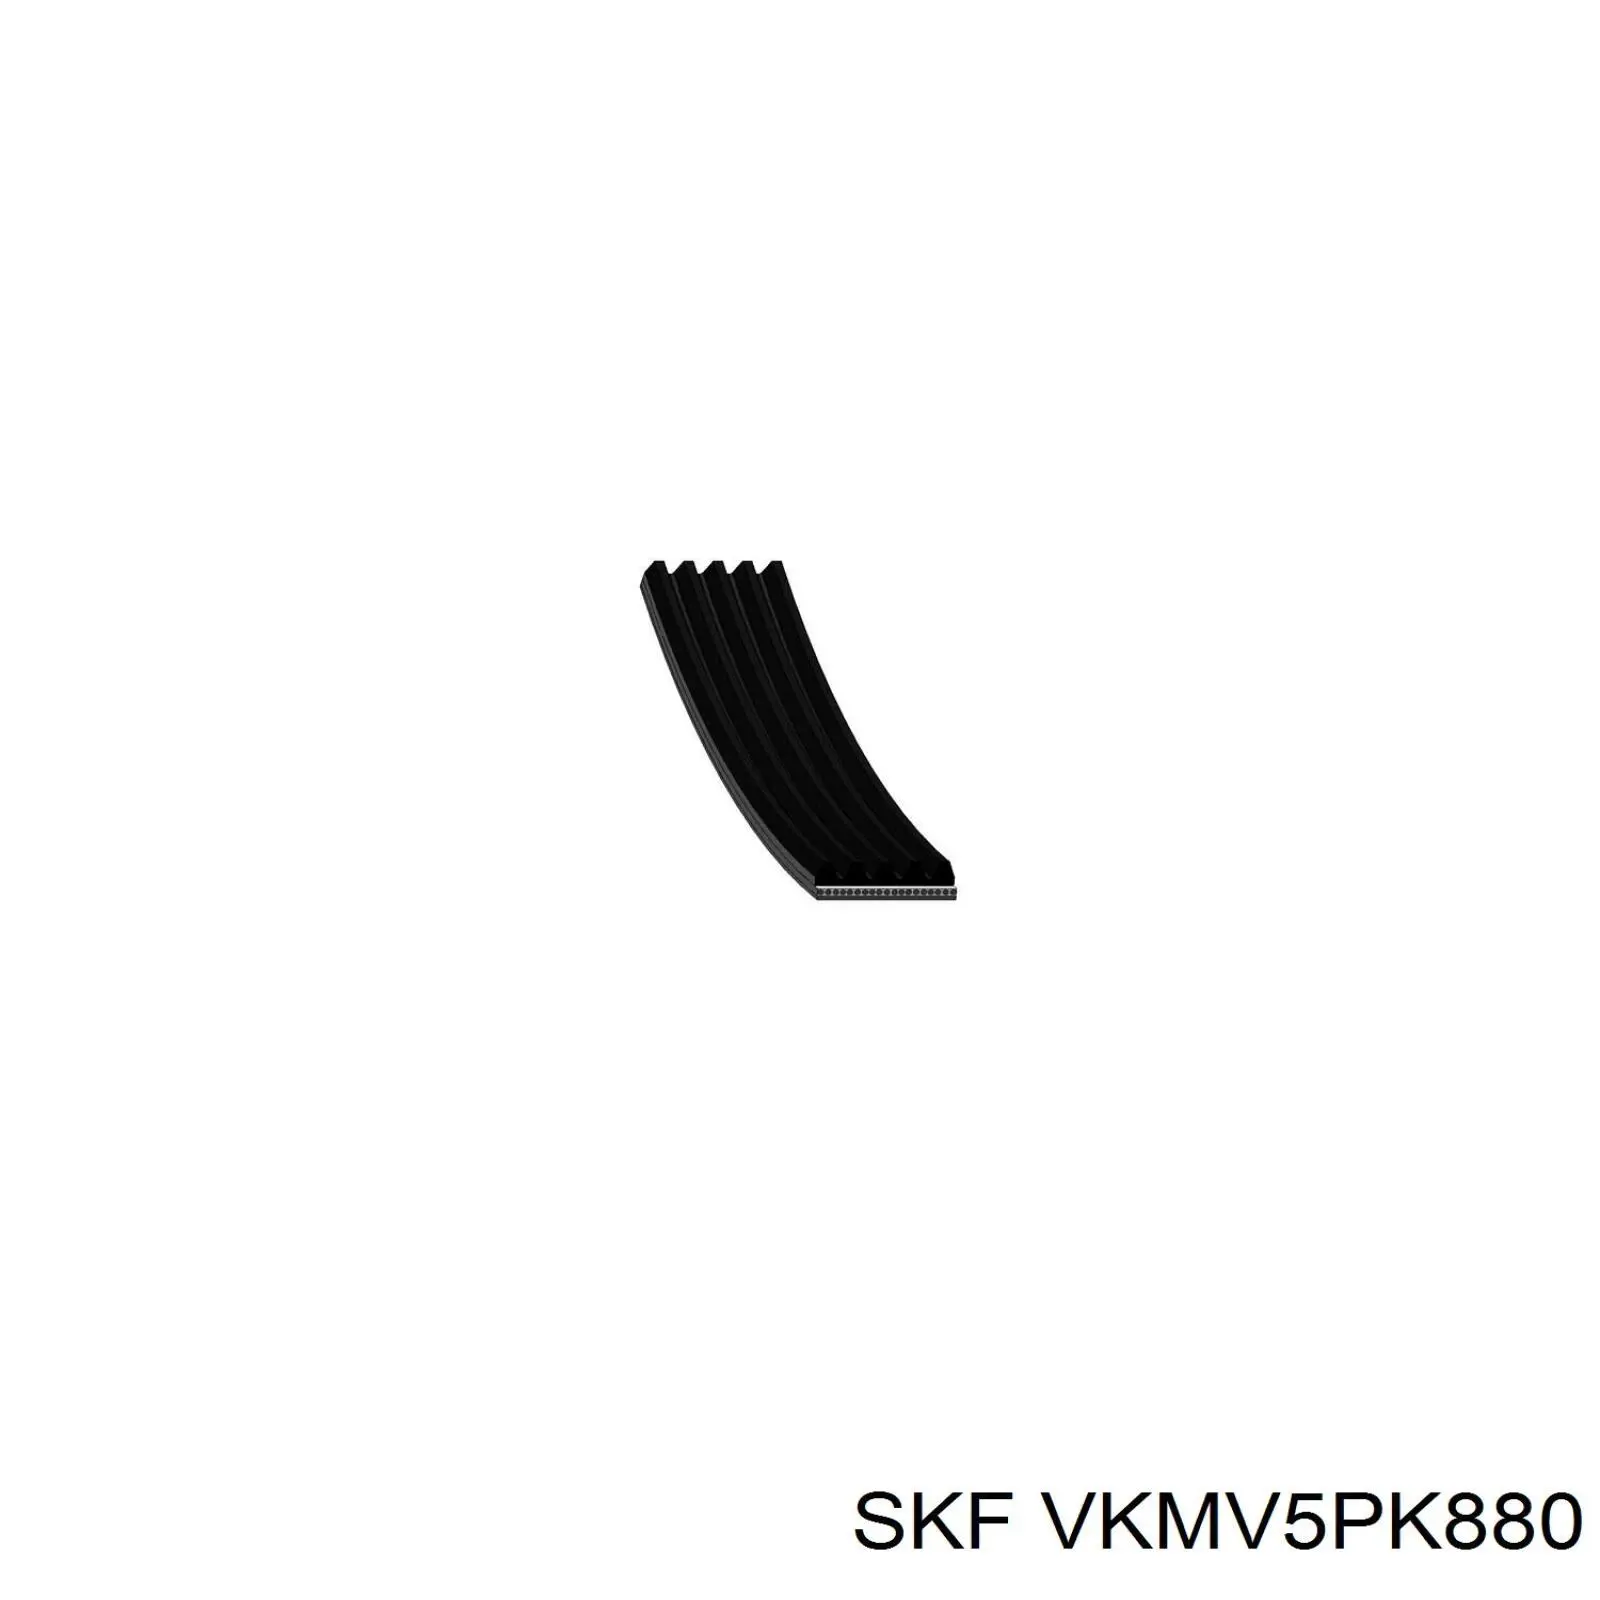 VKMV5PK880 SKF correa trapezoidal